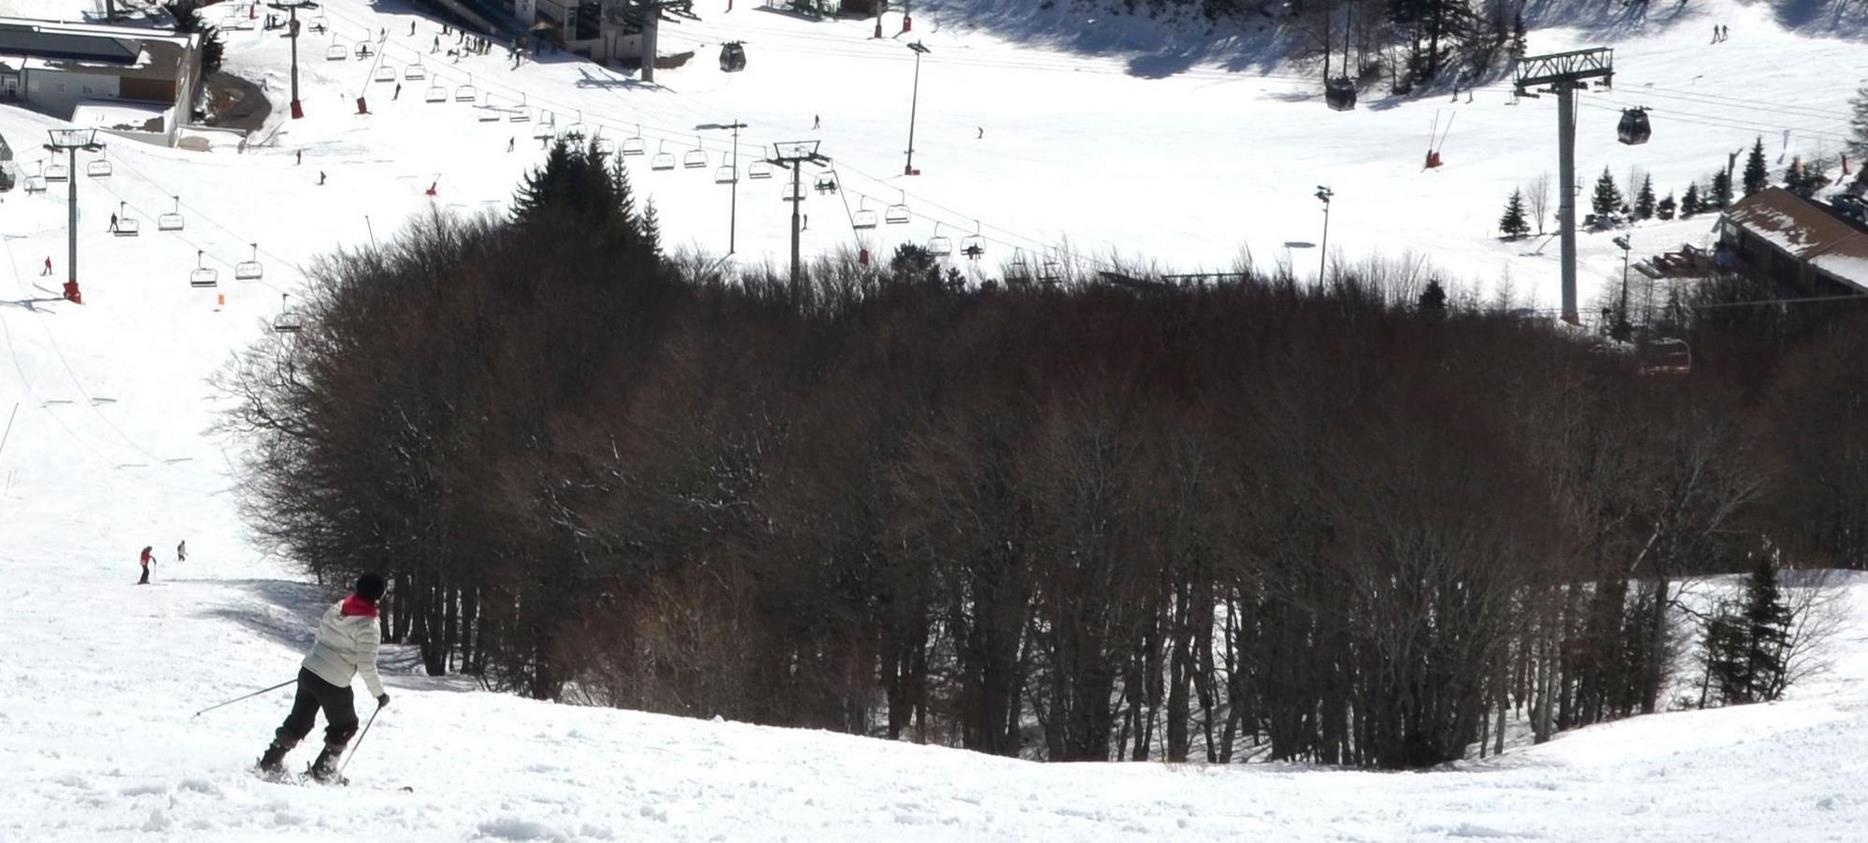 Super Besse - Ski slopes - downhill